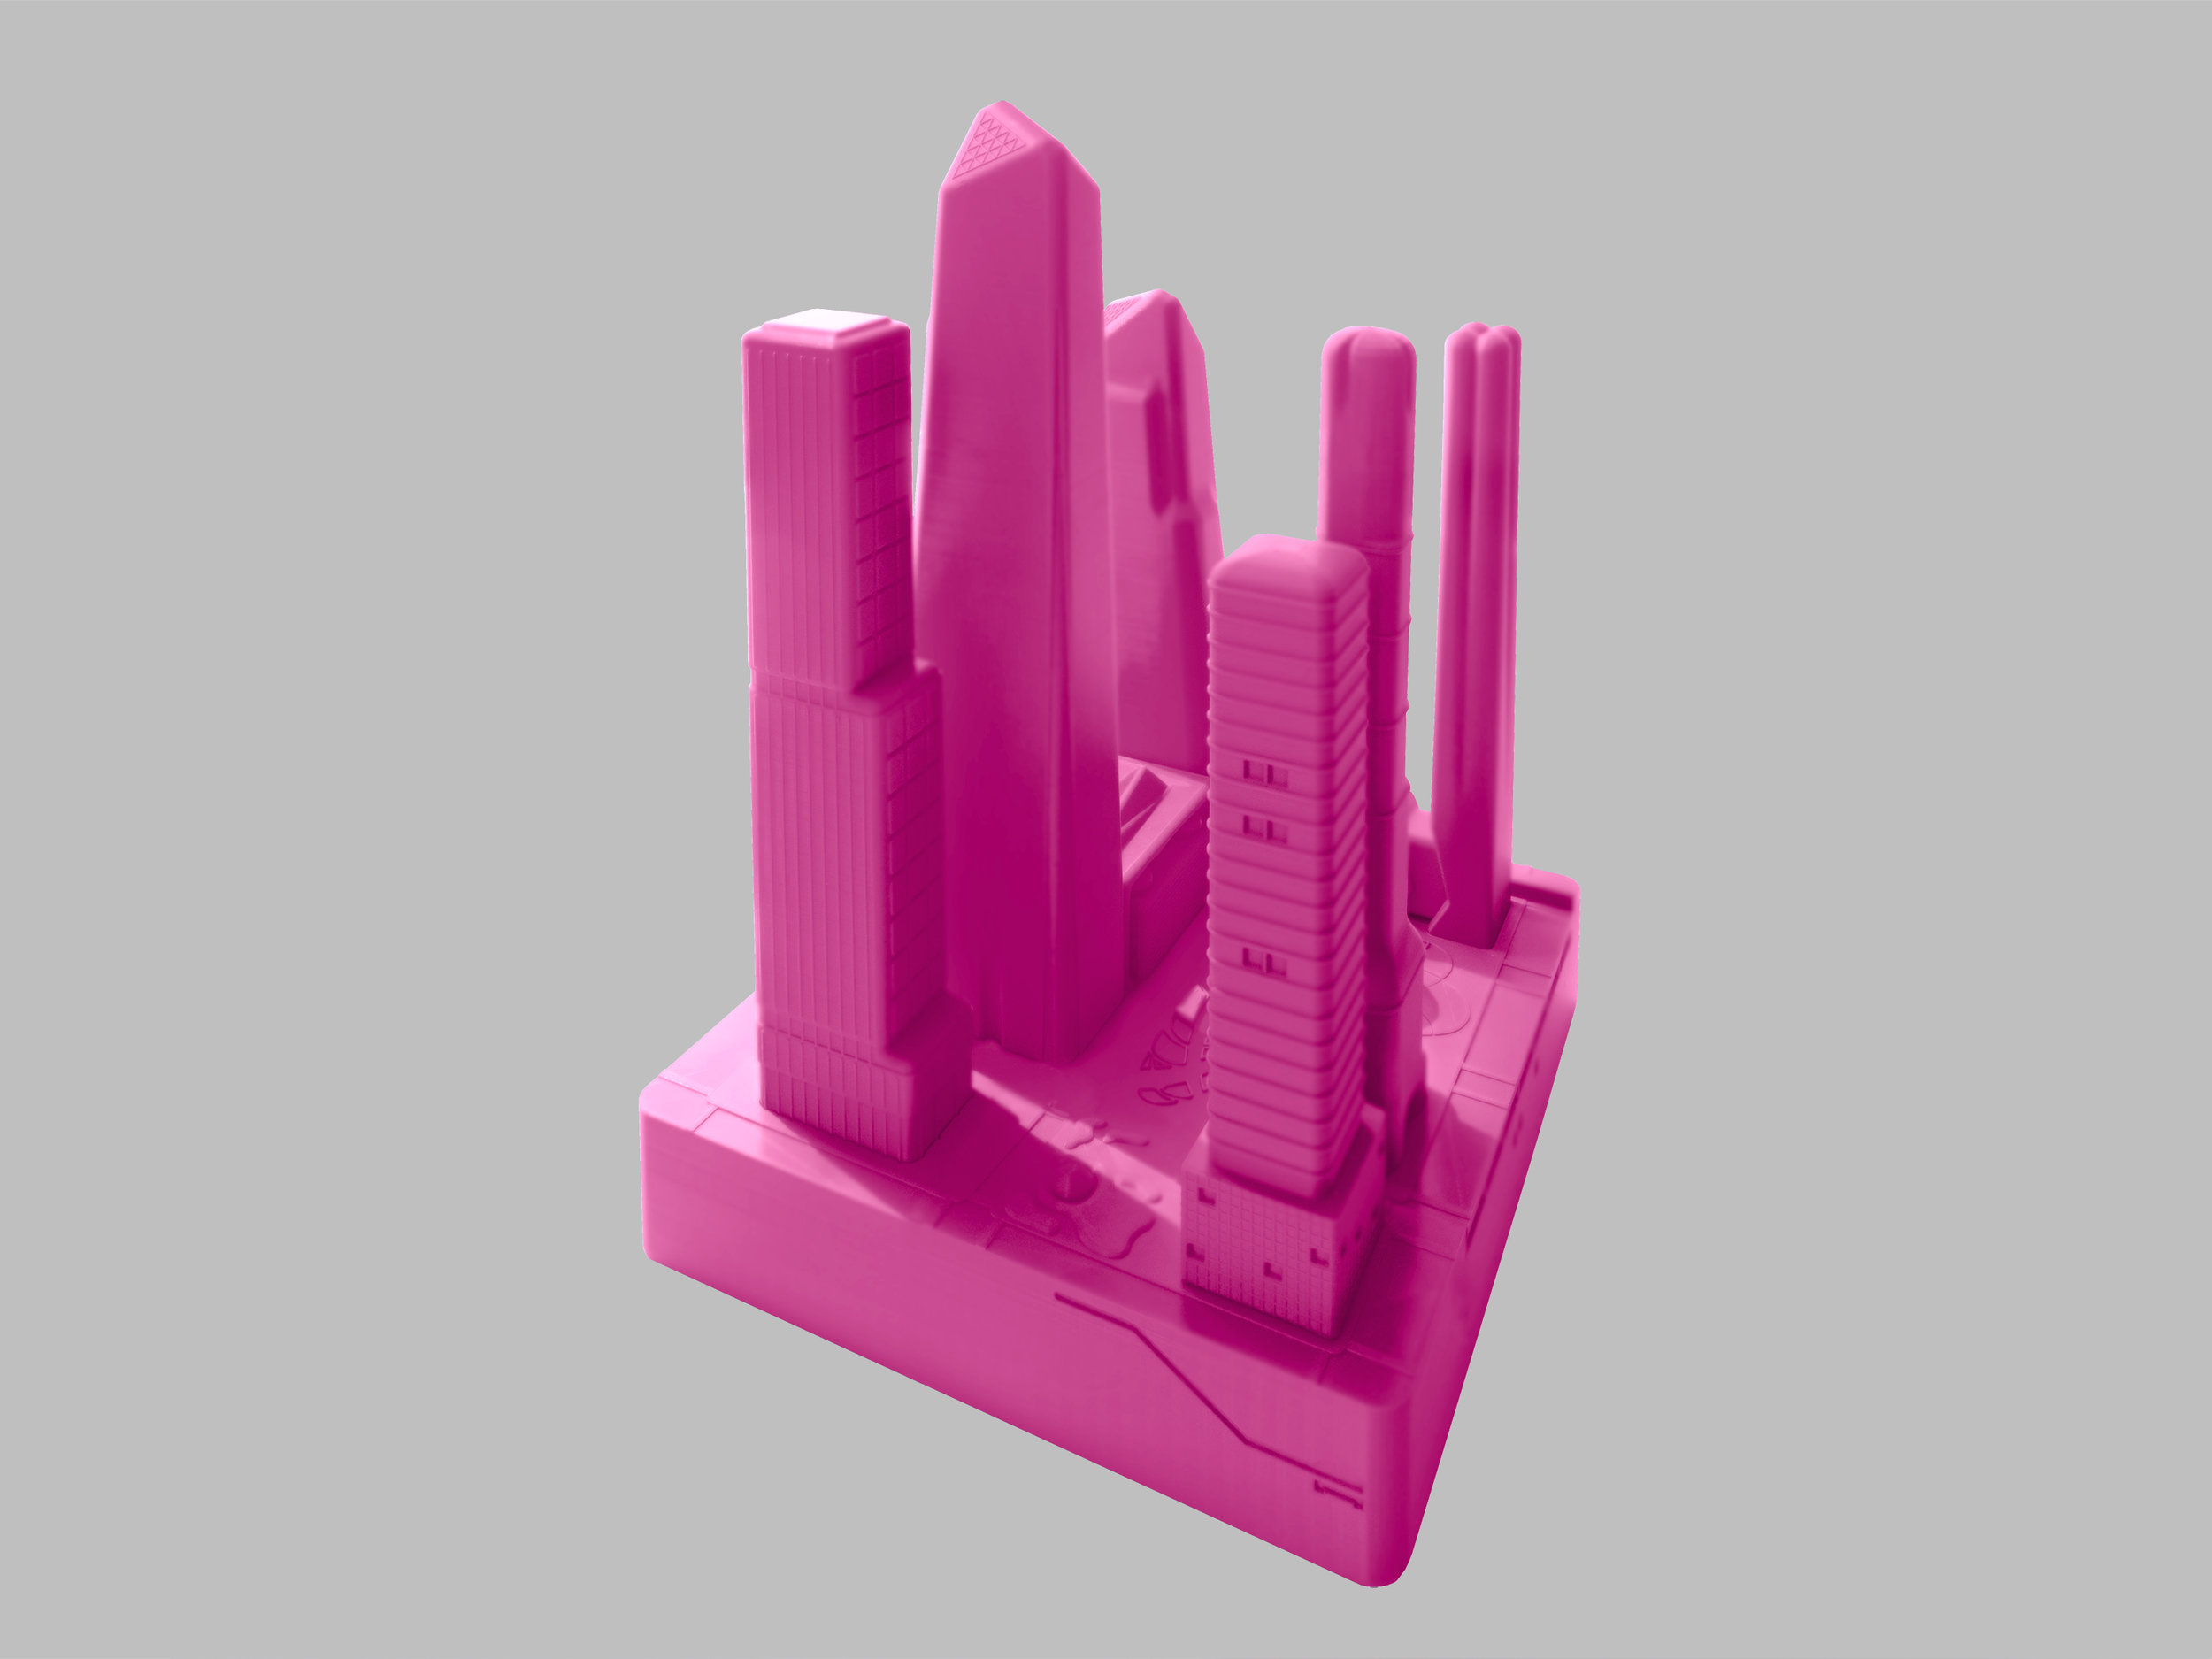 在哈德逊广场的模型中，一组粉色的性玩具形状像塔